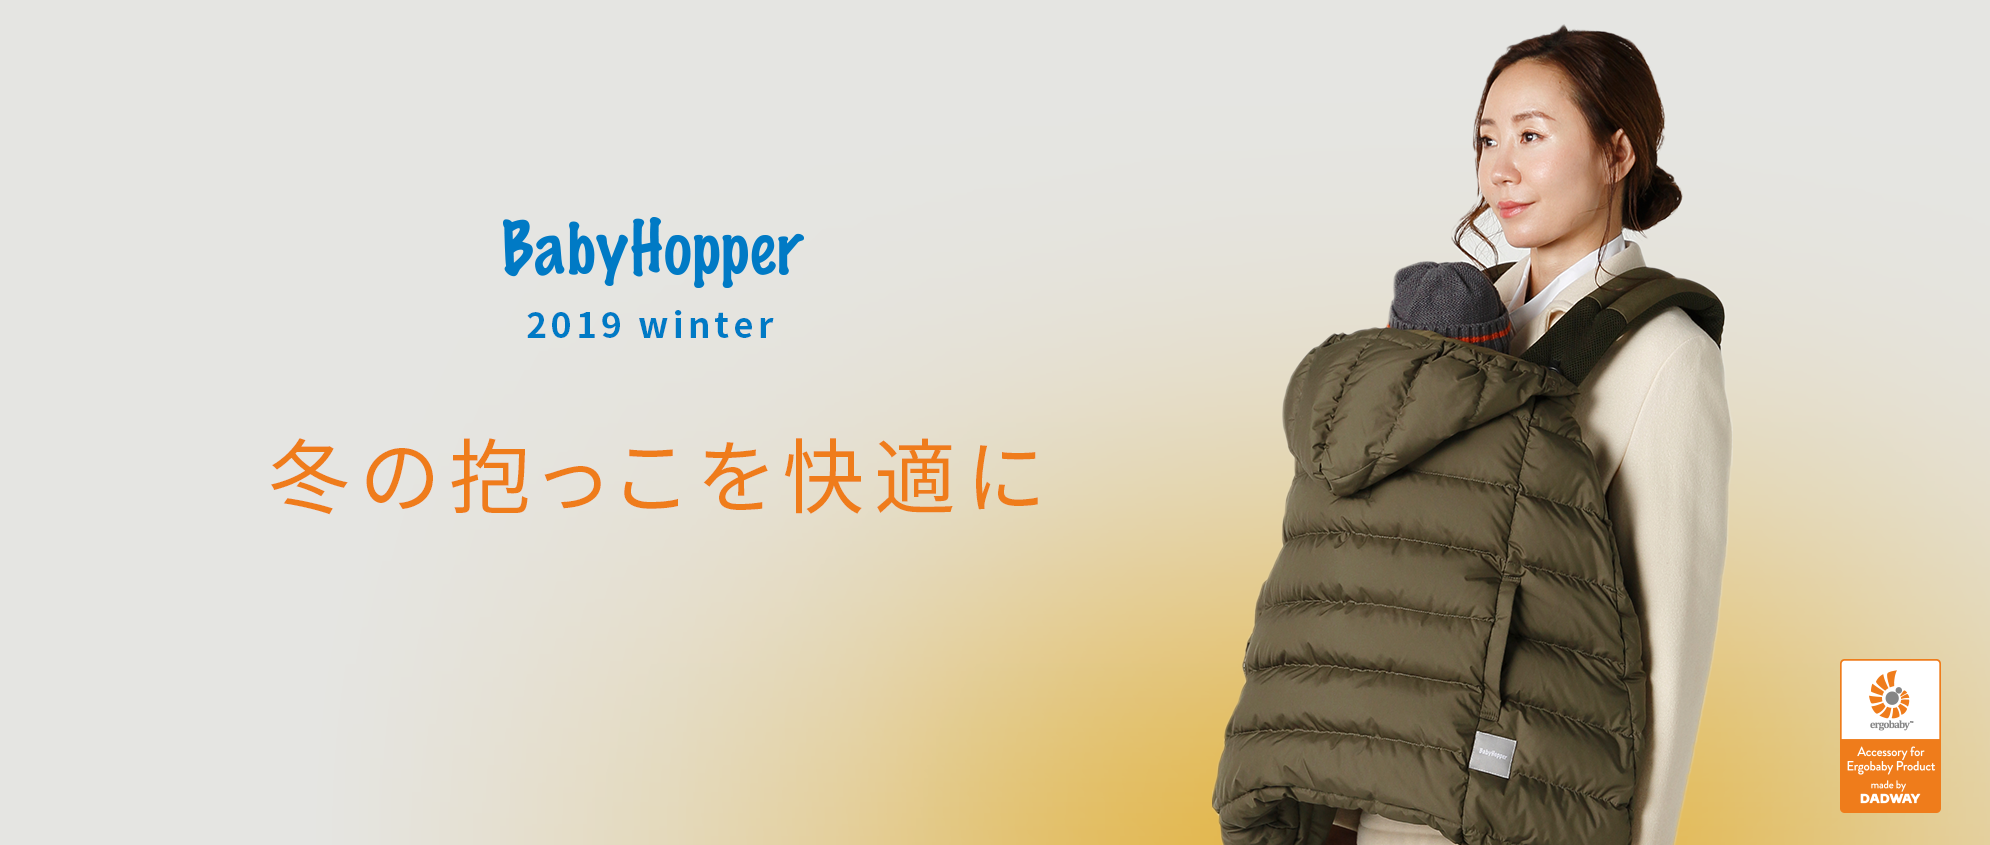 お出かけファミリー冬のマストアイテム、エルゴベビー専用防寒カバー5シリーズ全15種類を「ベビーホッパー」より販売開始